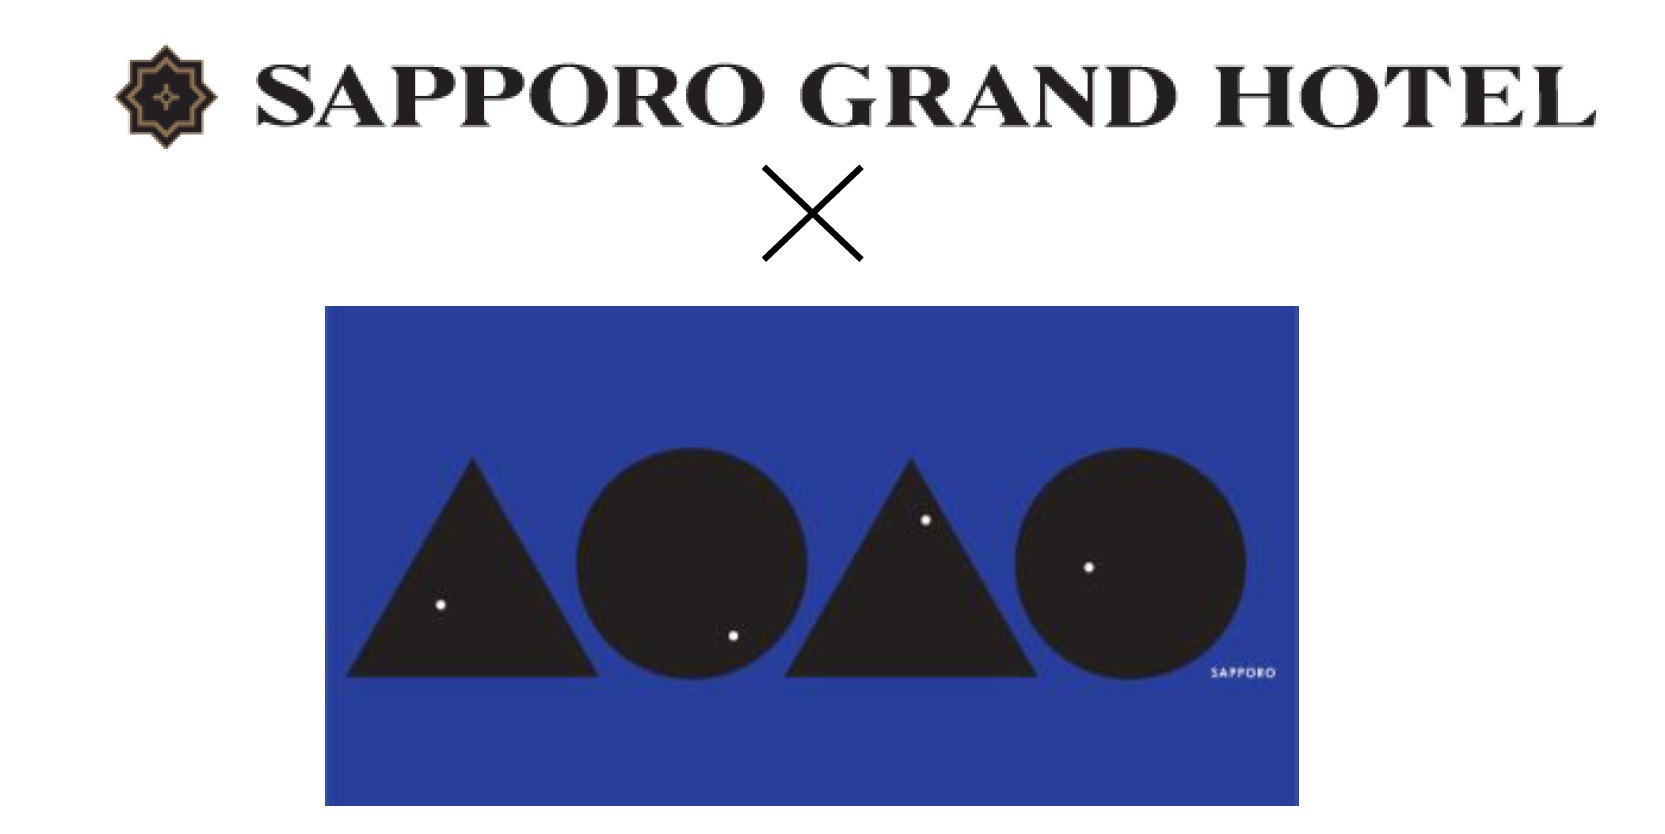 【札幌グランドホテル】× 新水族館 AOAO SAPPORO　夏を愉しむコラボレーションプロモーション企画のサブ画像1